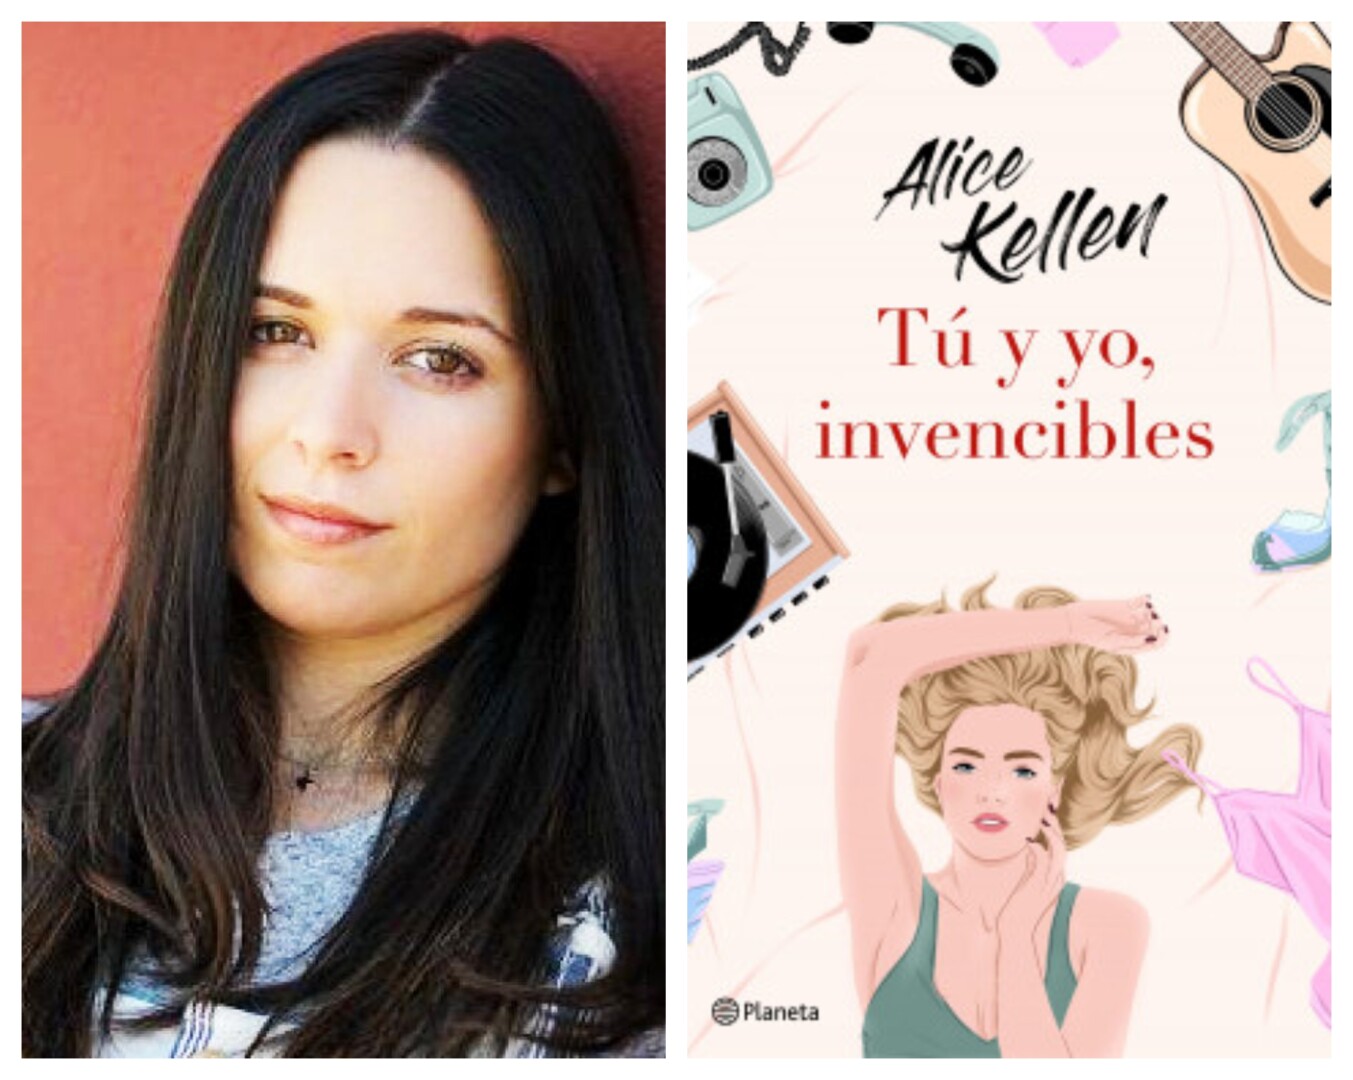 Desvelada la cubierta y fecha de ‘Tú y yo, invencibles’, el nuevo libro de Alice Kellen